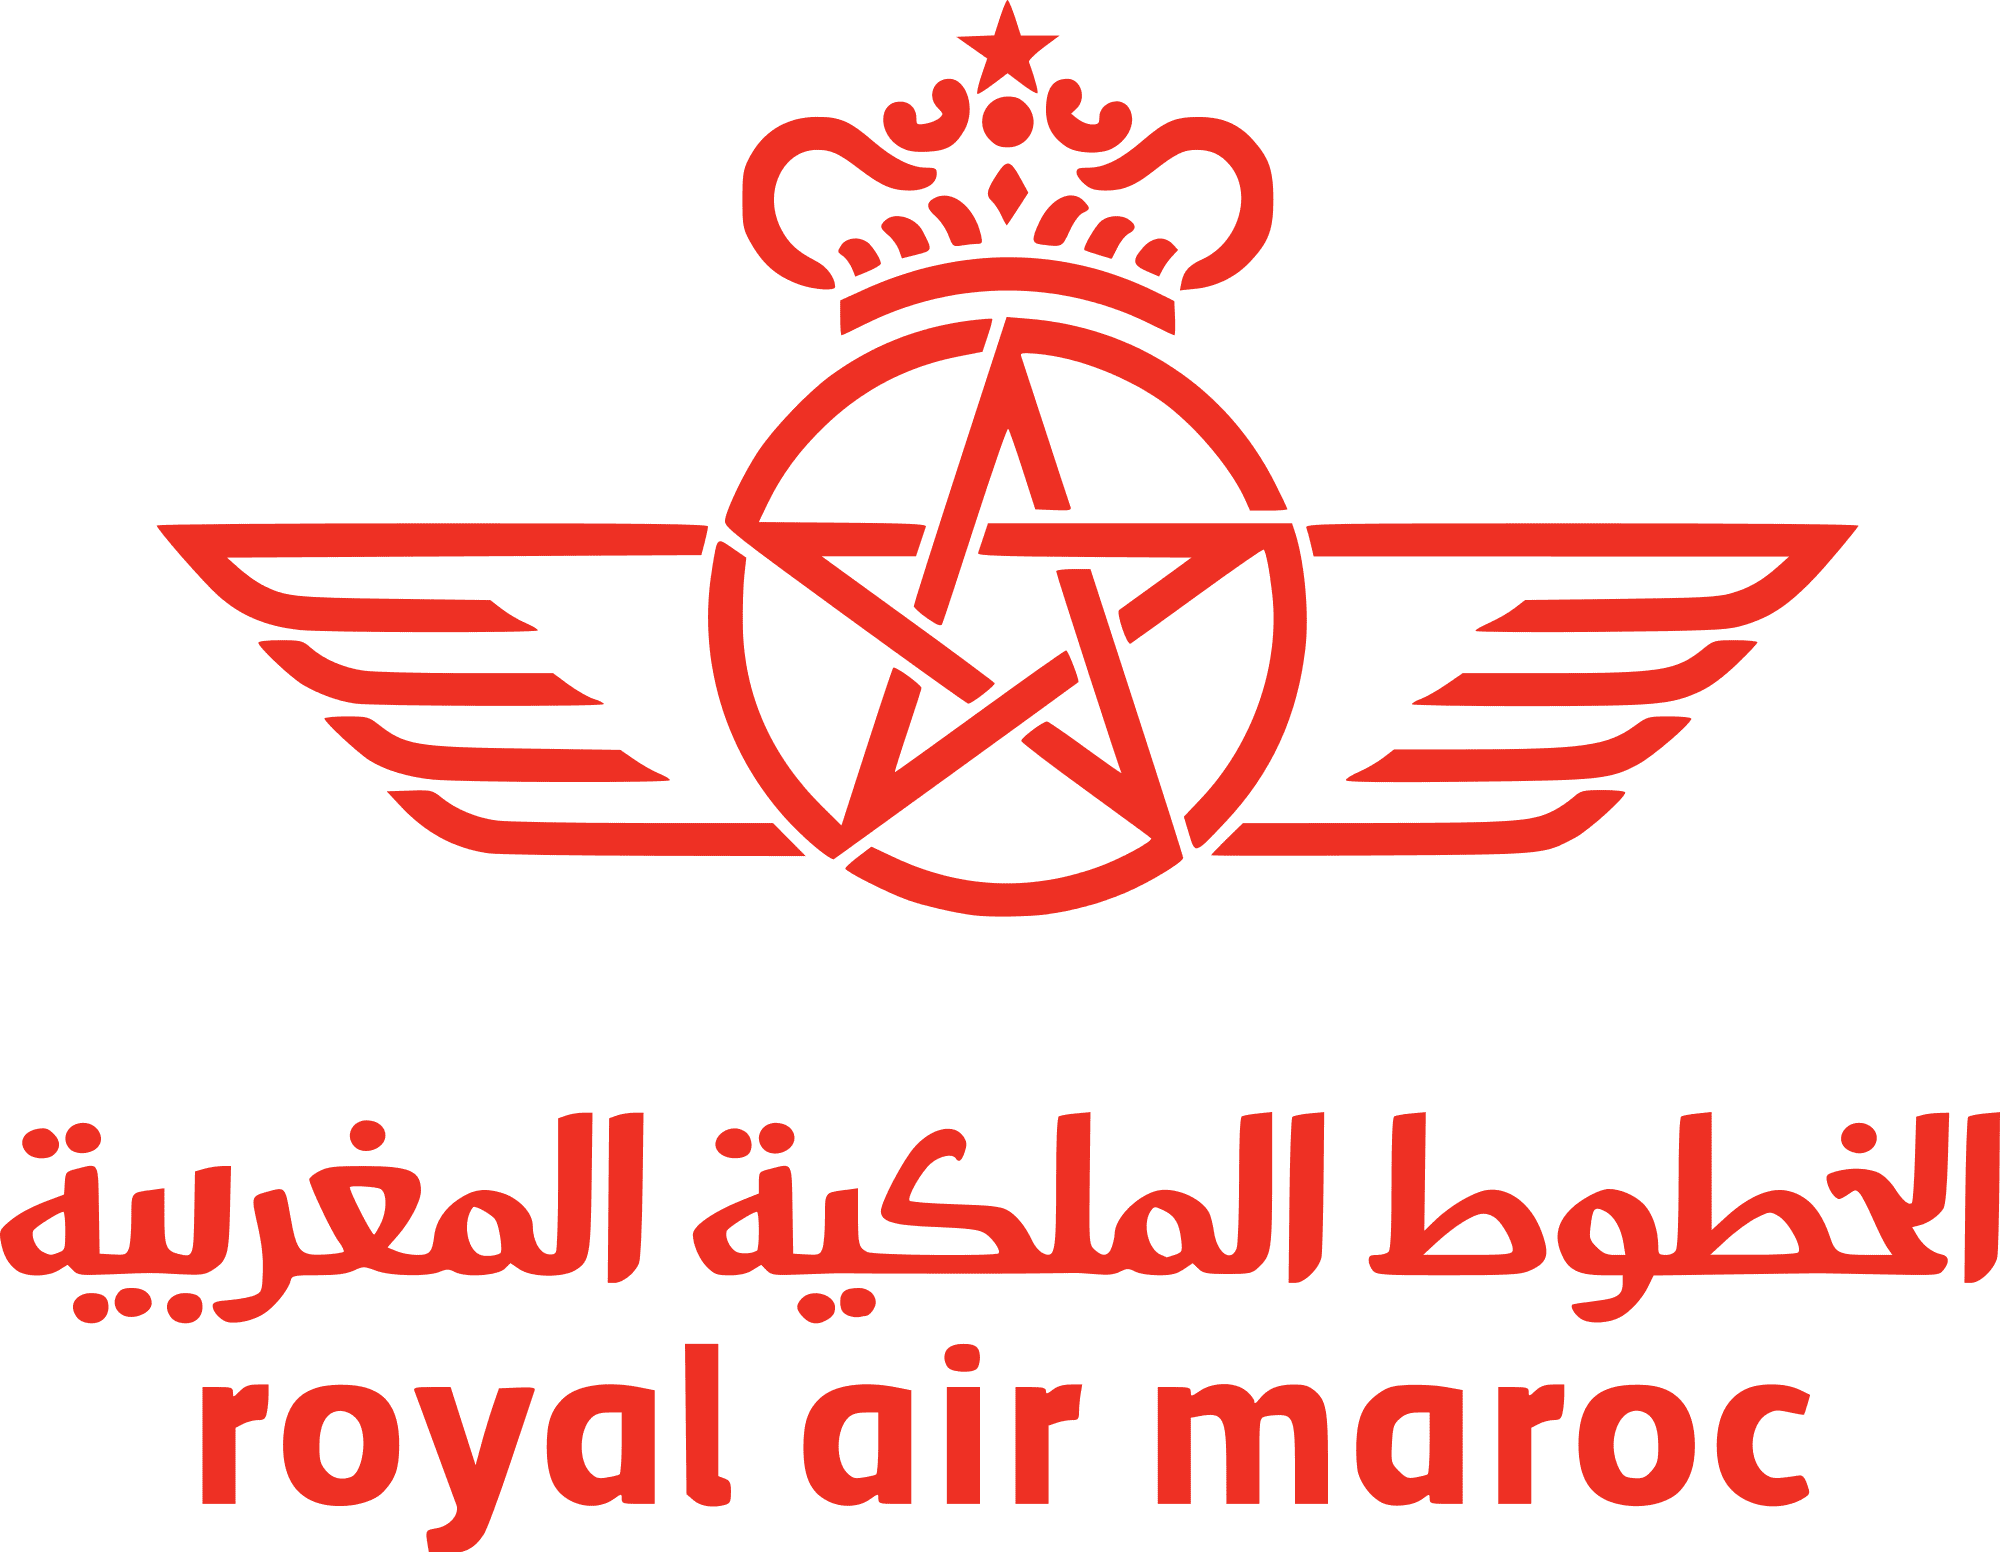 Royal Air Logo and symbol, meaning, history, PNG